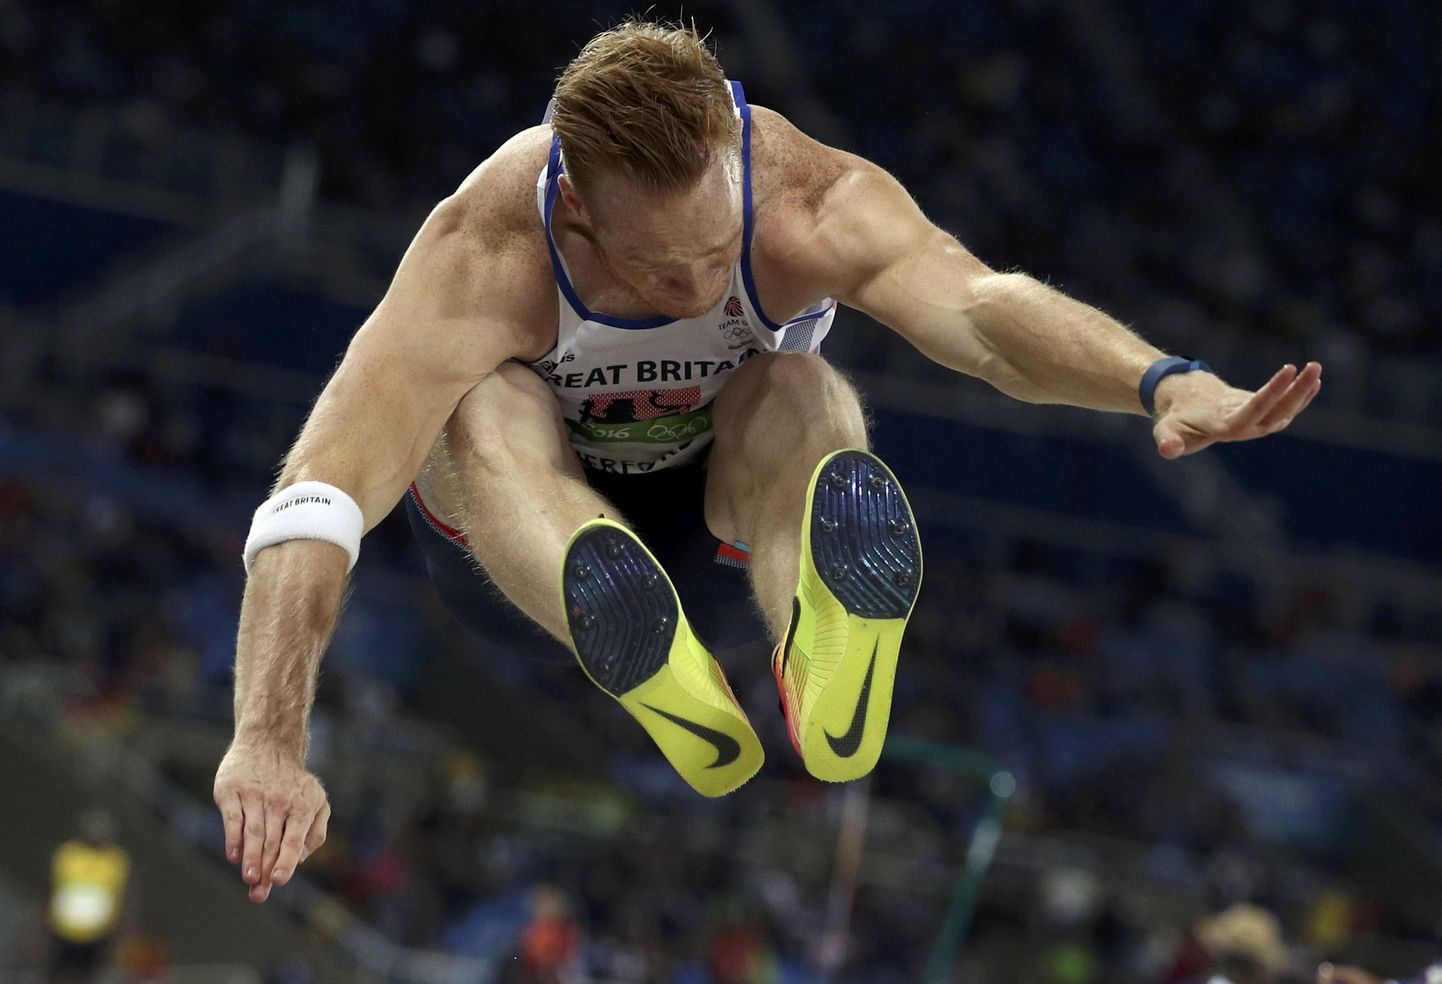 Tiitlikaitsja Greg Rutherford hüppas Rio olümpiamängude kvalifikatsioonis vaid 7.90.